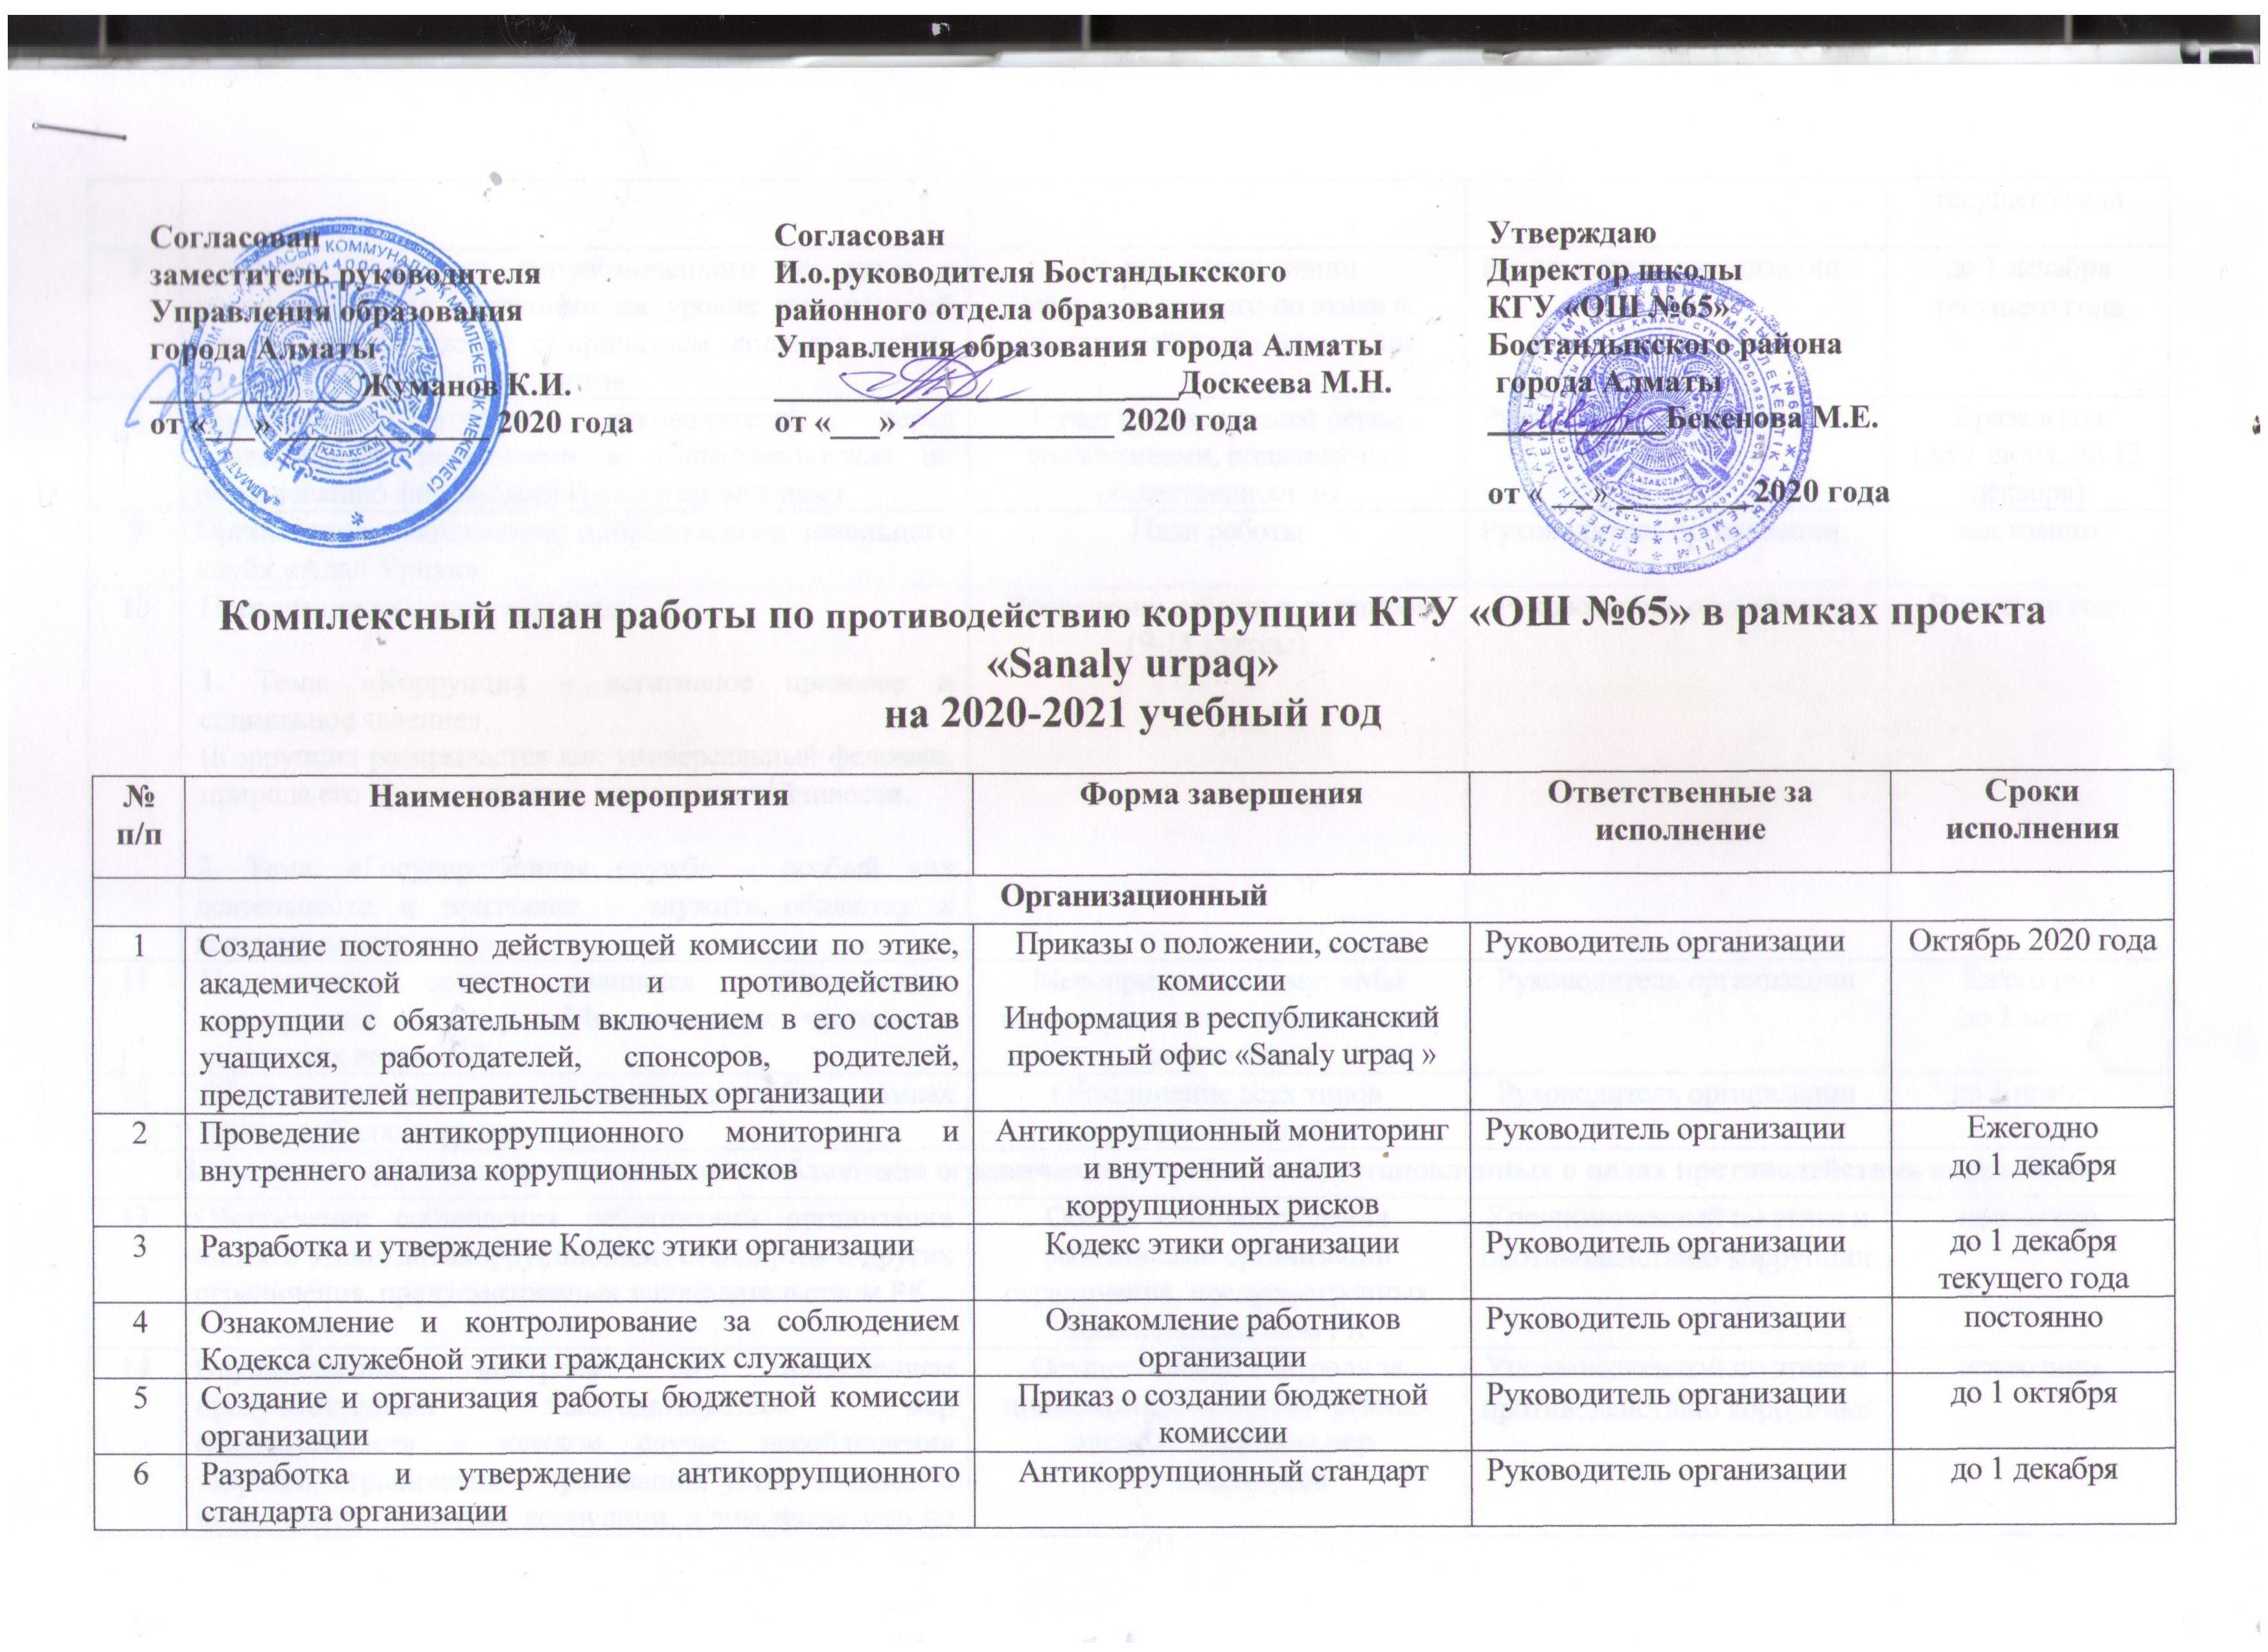 Комплексный план работы по противодействию коррупции КГУ "ОШ№65" в рамках проекта "Sanaly urpaq" на 2020 - 2021 учебный год